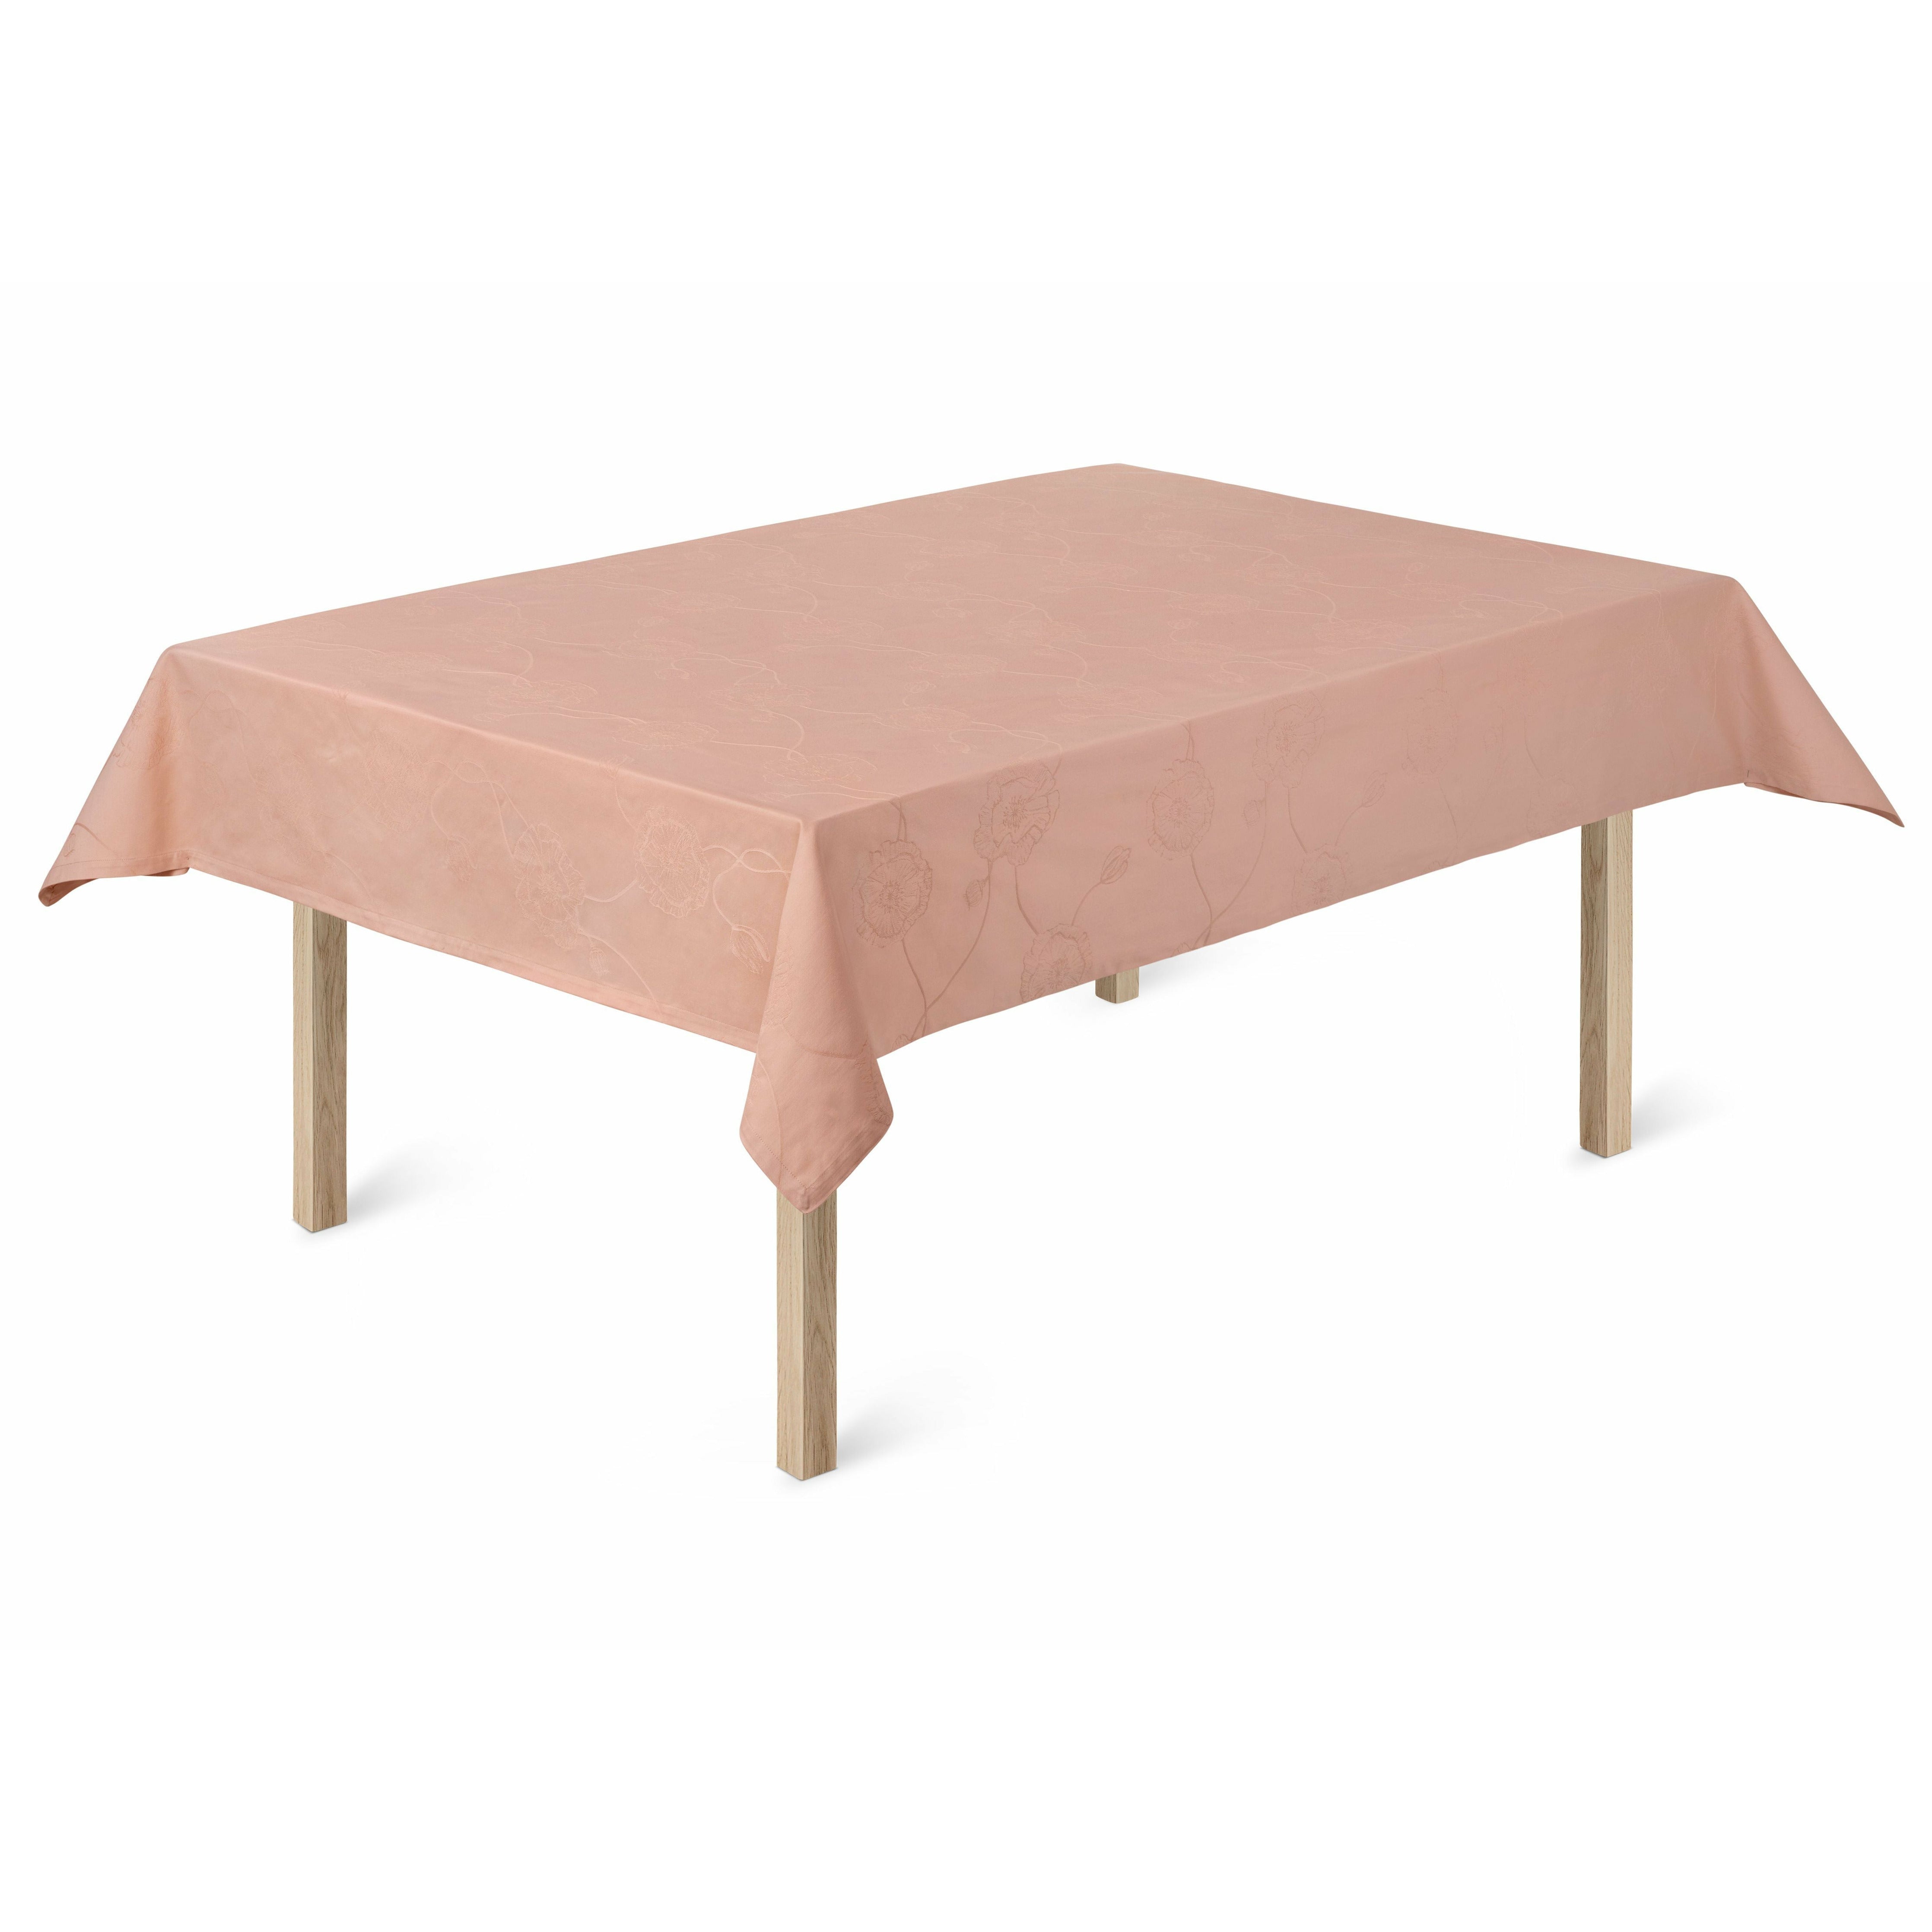 Kähler Hammershøi Poppy Table Cloth 150x270 Cm, Nude